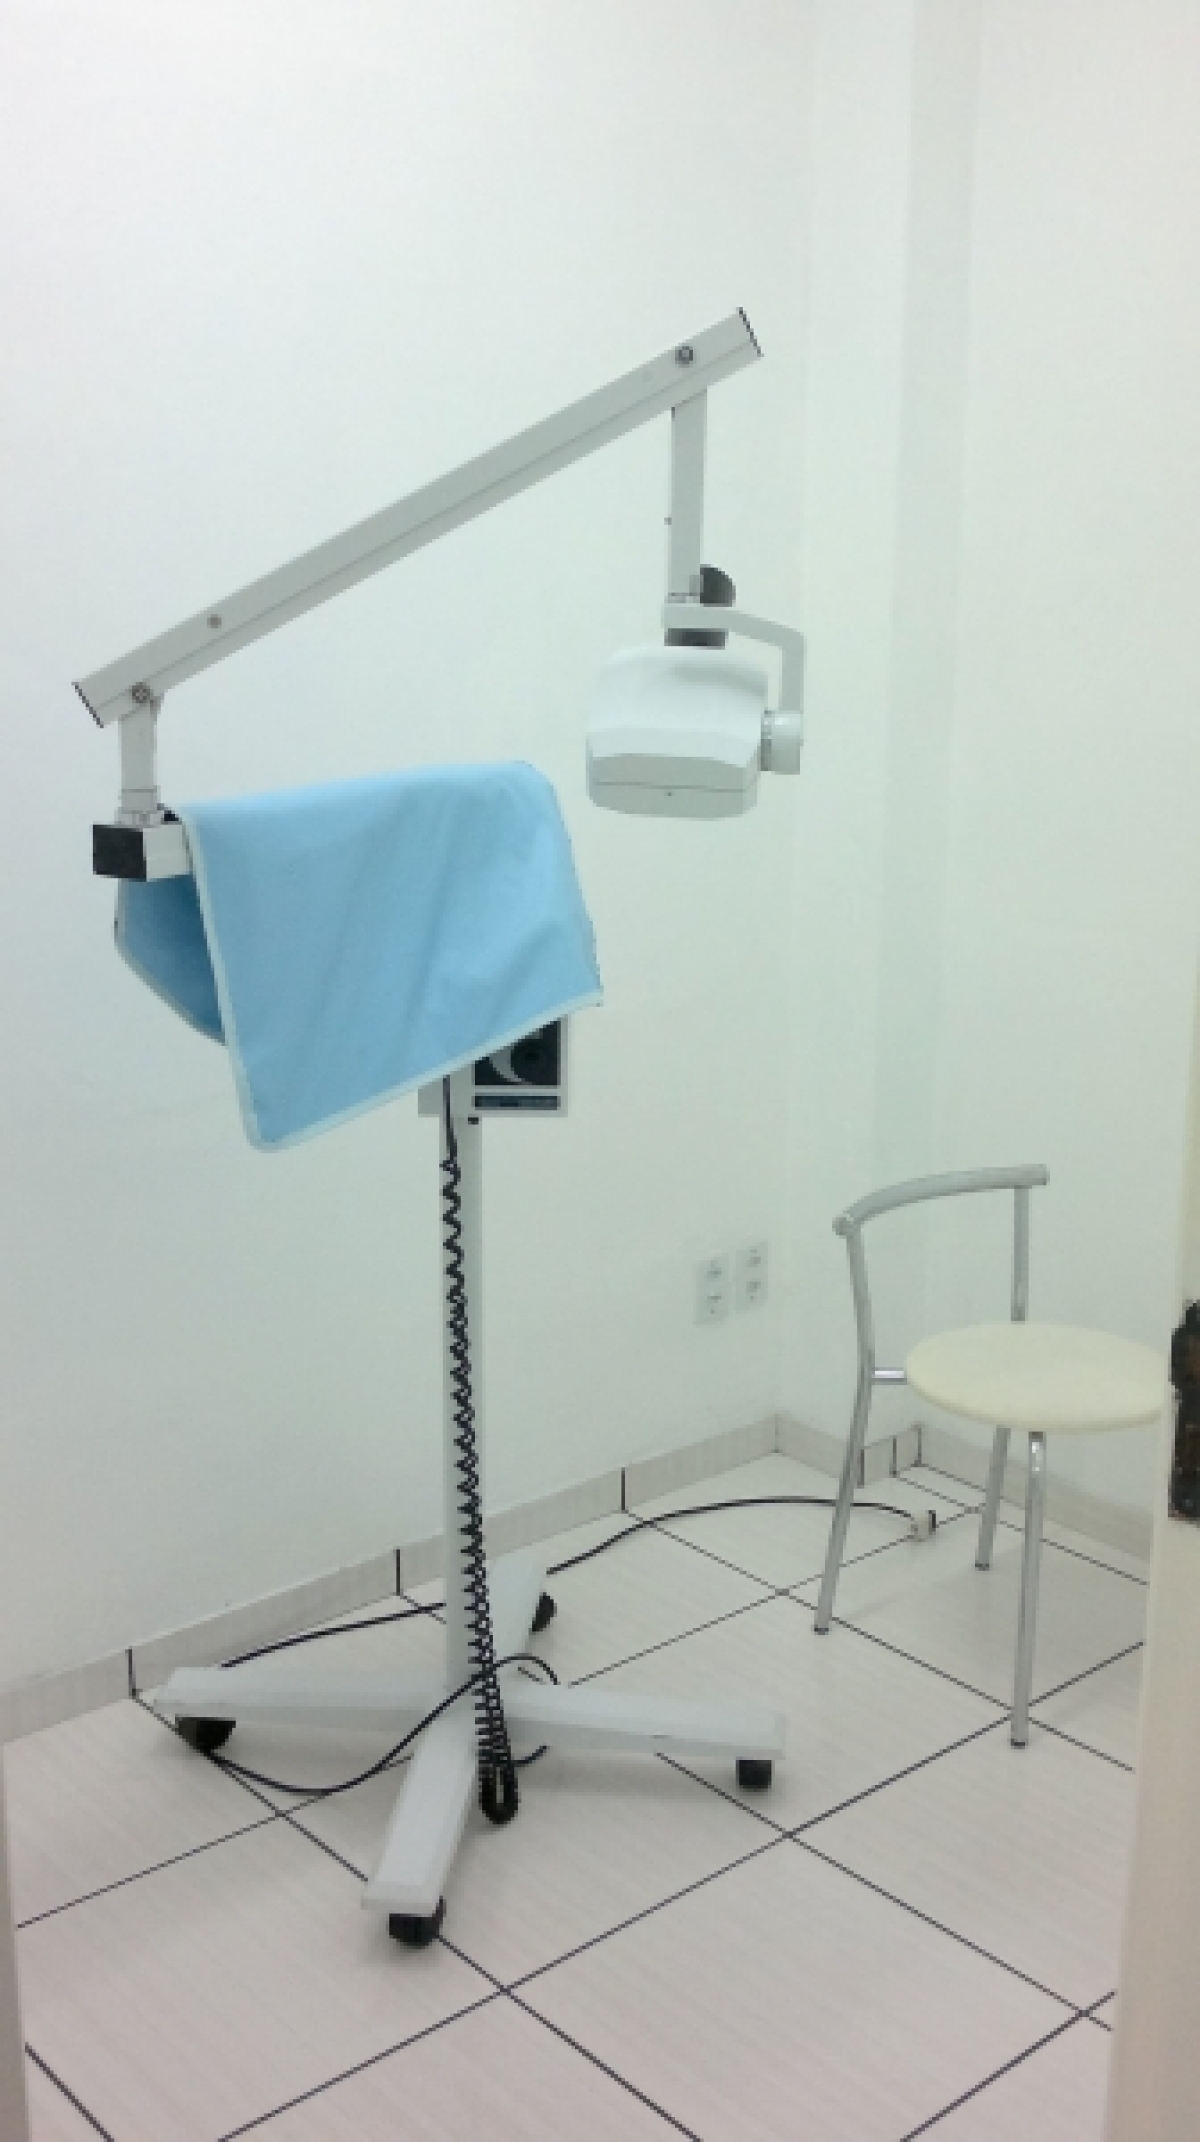 Vendo clínica odontológica completa em Santiago-RS!